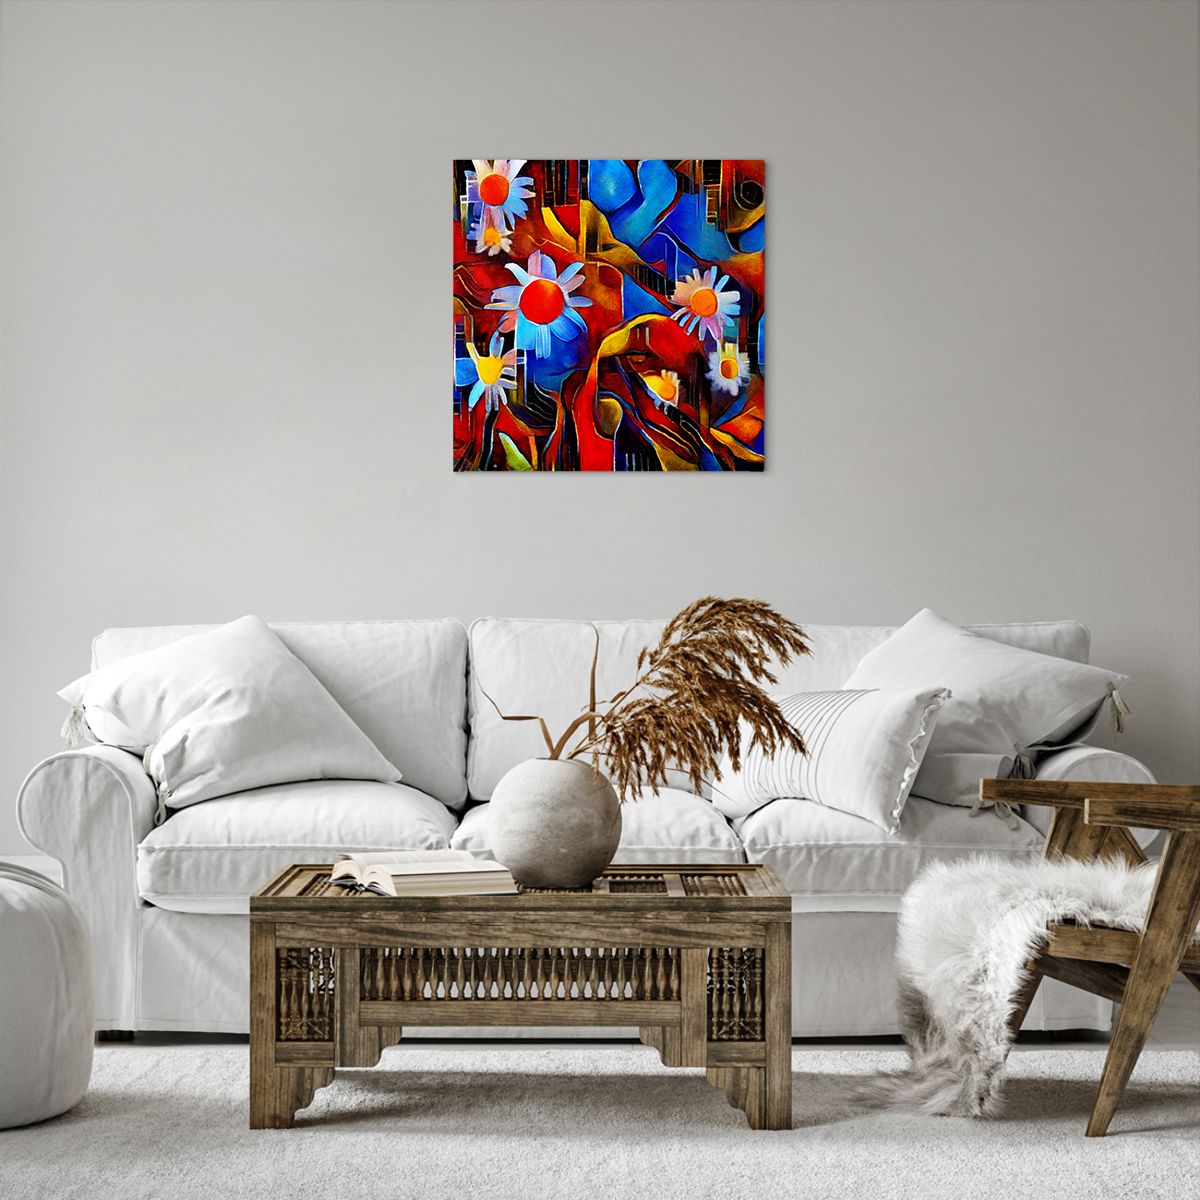 Bild auf Leinwand Abstraktion, Bild auf Leinwand Kubismus, Bild auf Leinwand Kunst, Bild auf Leinwand Blumen, Bild auf Leinwand Bunte Abbildung